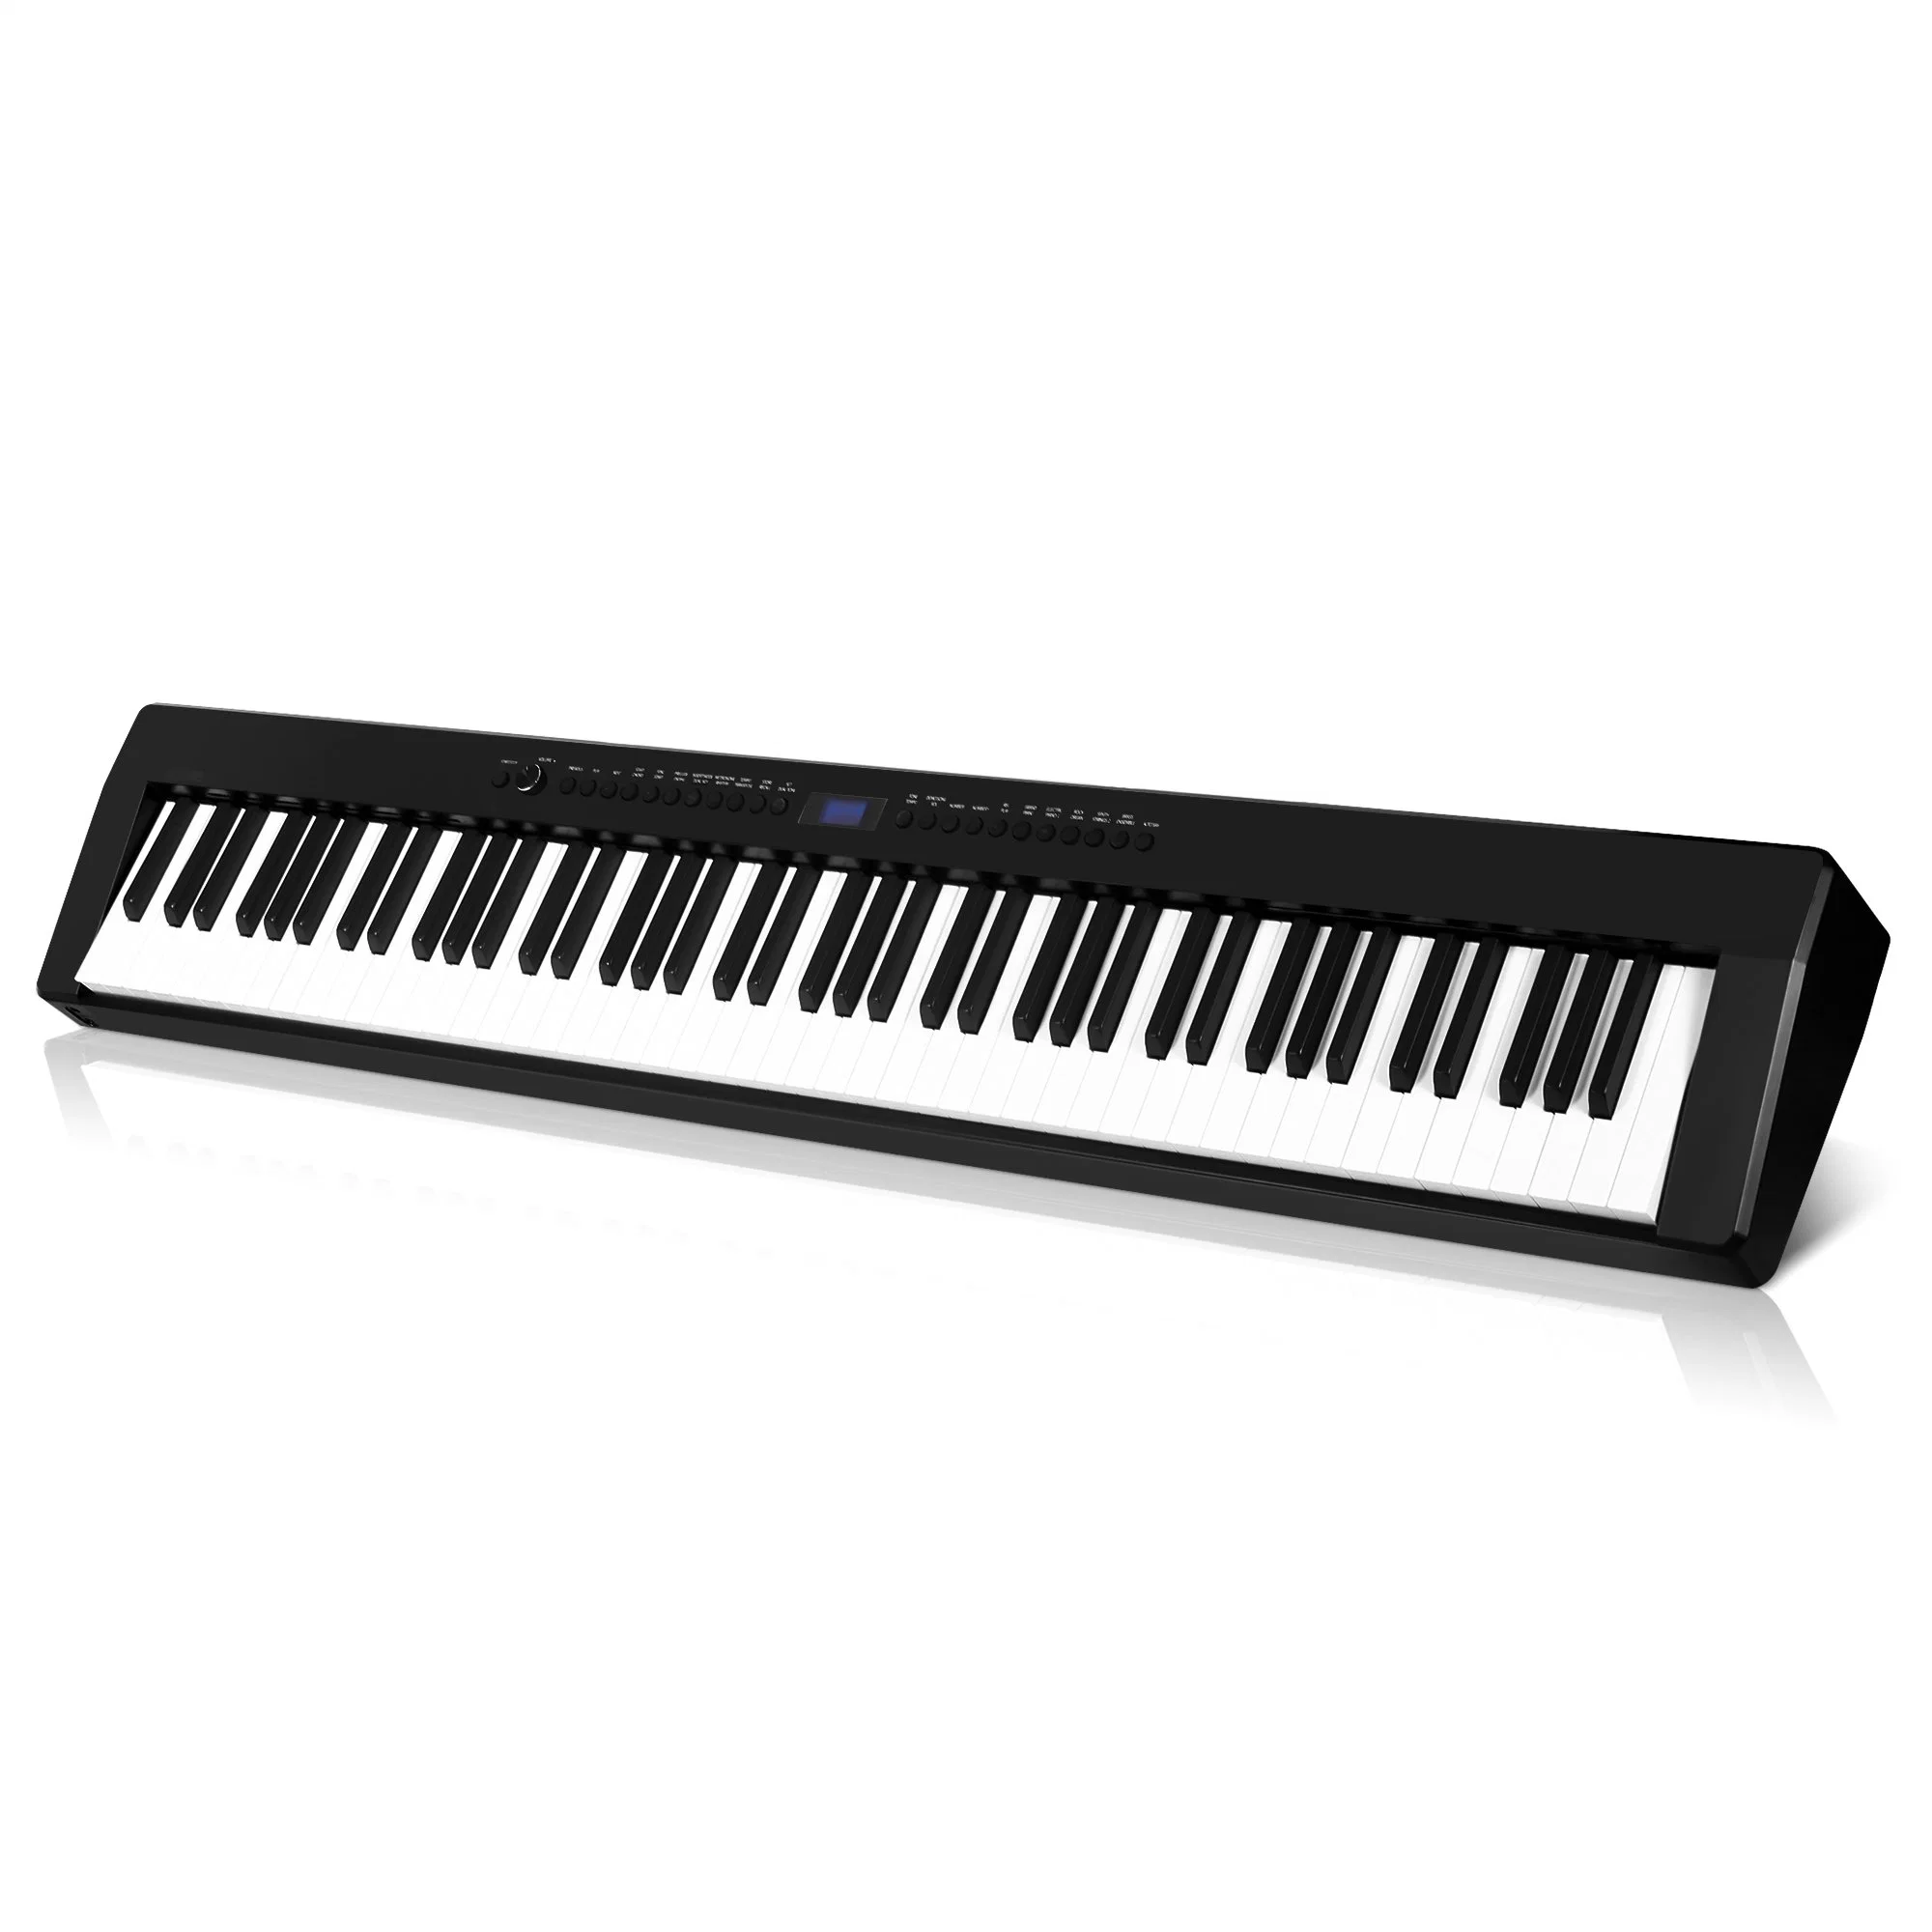 Portátil Smiger 88 ponderado martillo clave Piano digital de teclado Función MIDI